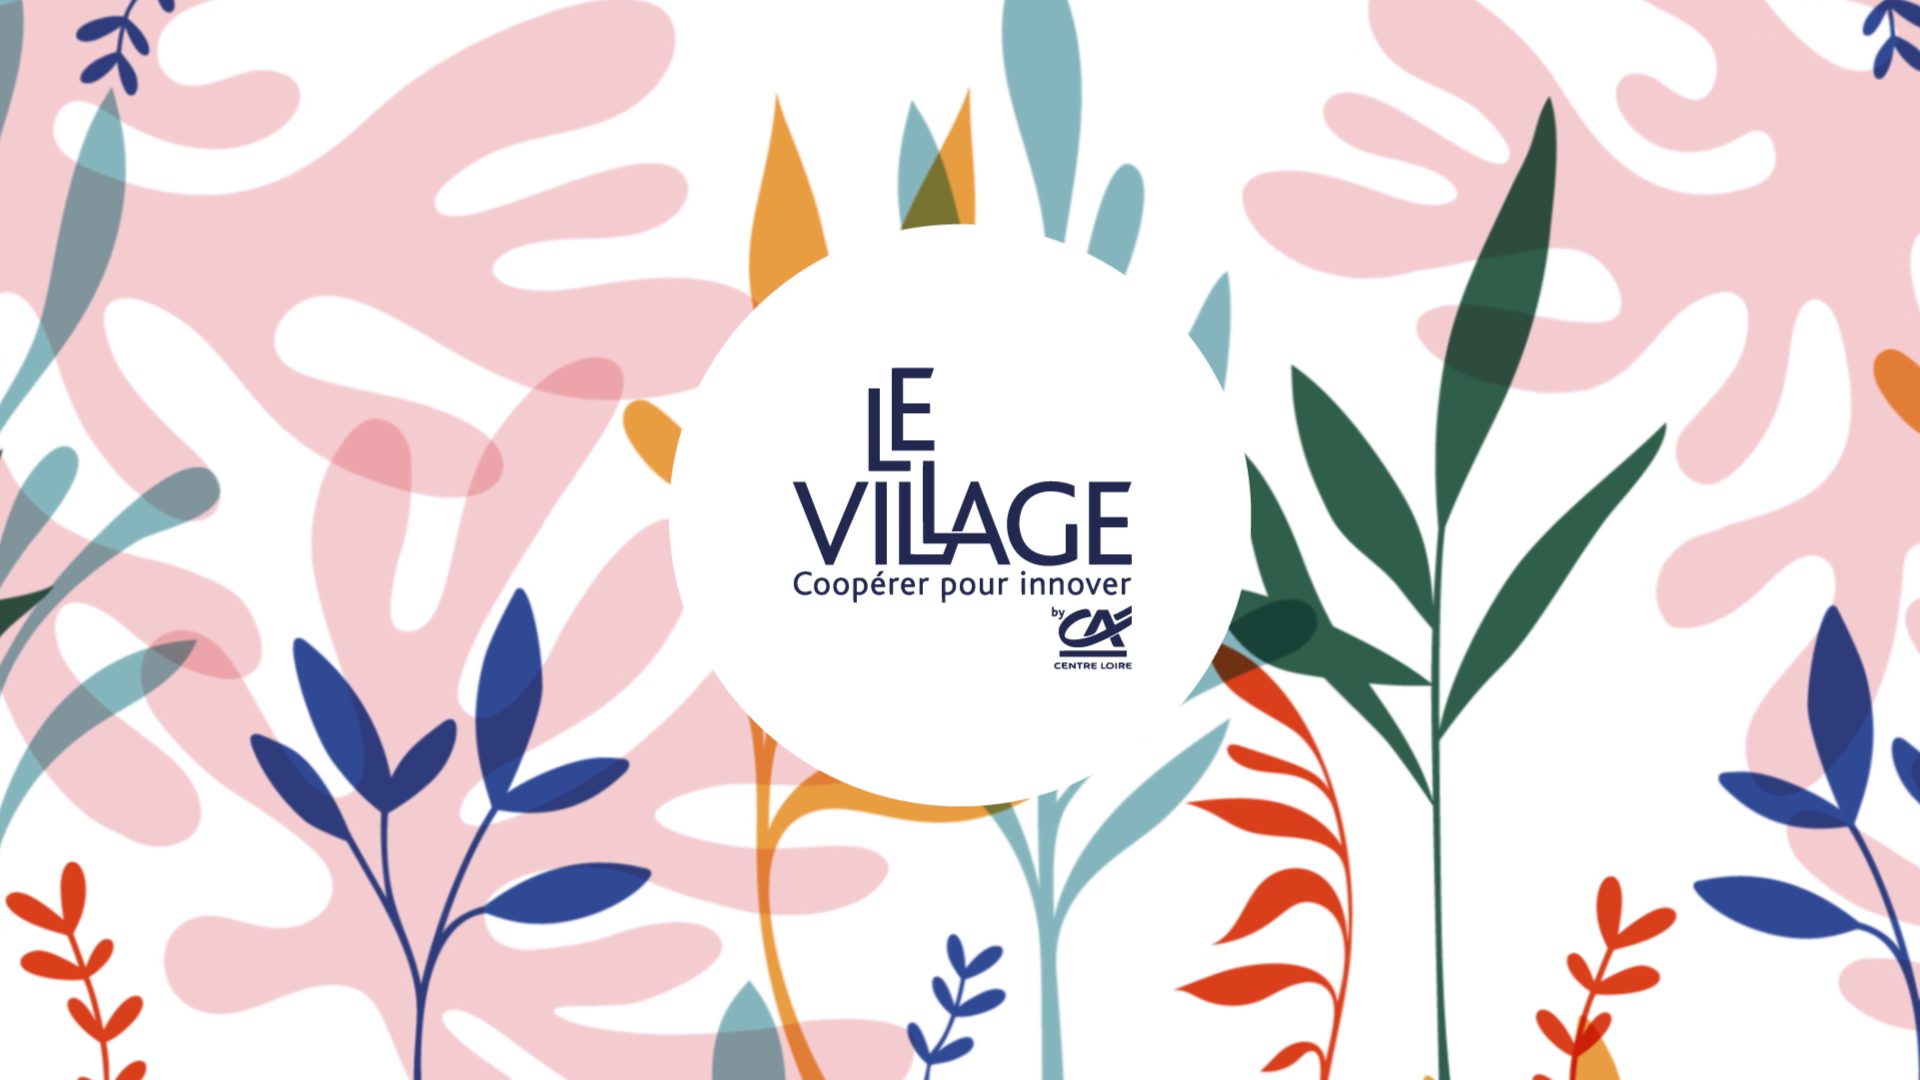 Le Village by CA – Bilan des 5 premières années